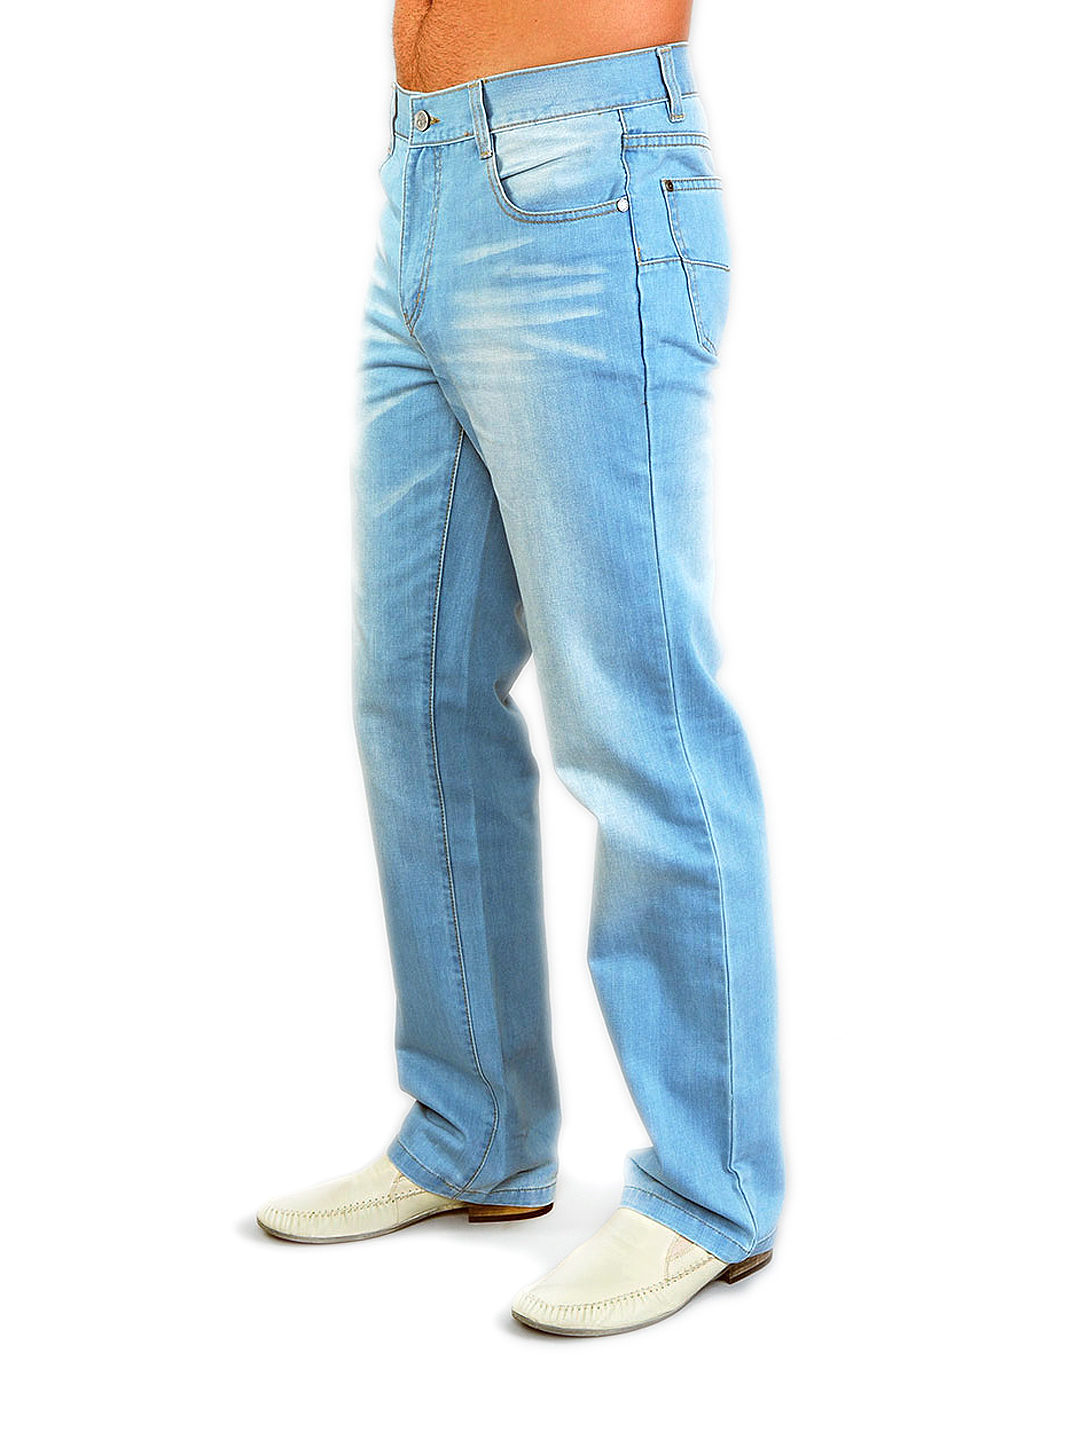 Джинсы мужские классические купить в москве недорого. Джинсы мужские Krezz. Голубые джинсы мужские. Джинсы мужские классические. Классические голубые джинсы мужские.